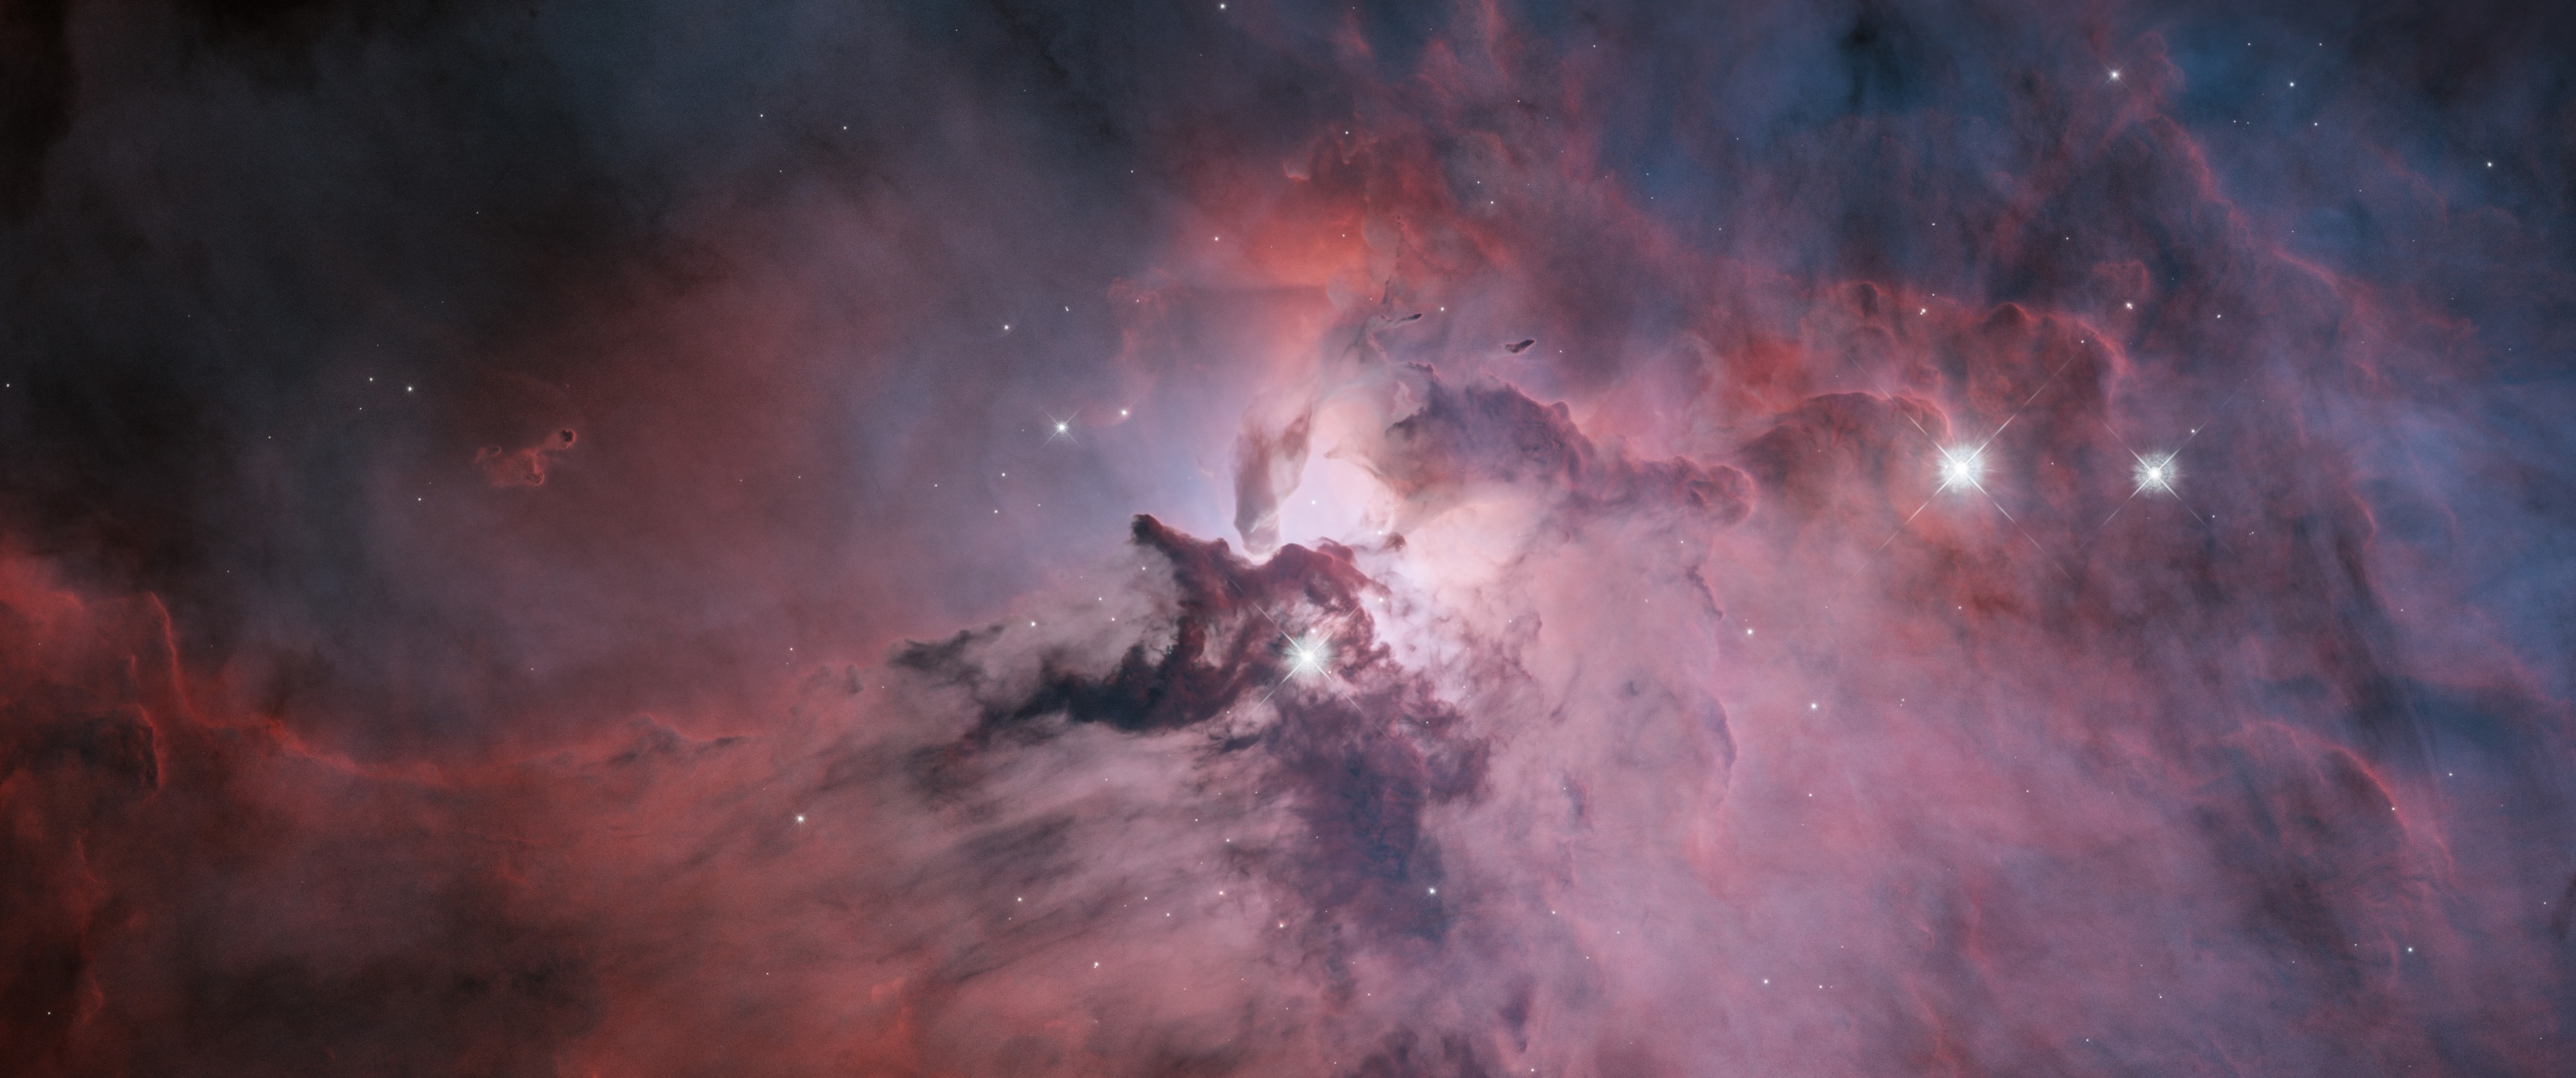 Hubble, Lagoon Nebula, 4K space wallpaper, Astronomical wonder, 3440x1440 Dual Screen Desktop